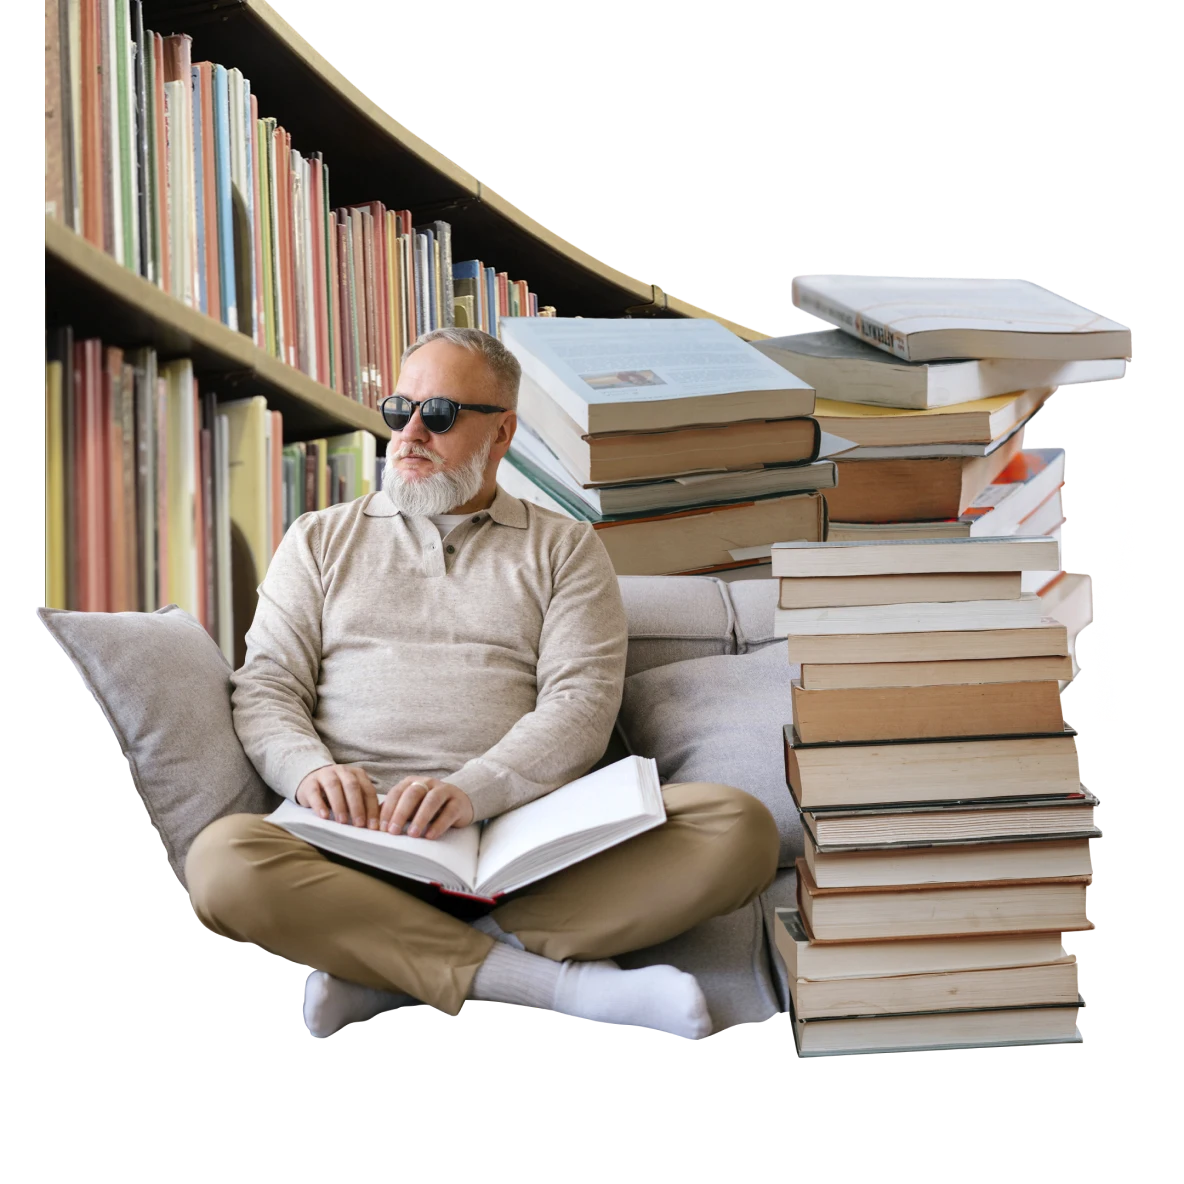 Homme blanc malvoyant avec des lunettes de soleil qui lit un livre en braille, assis en tailleur entre des piles de livres et une bibliothèque.